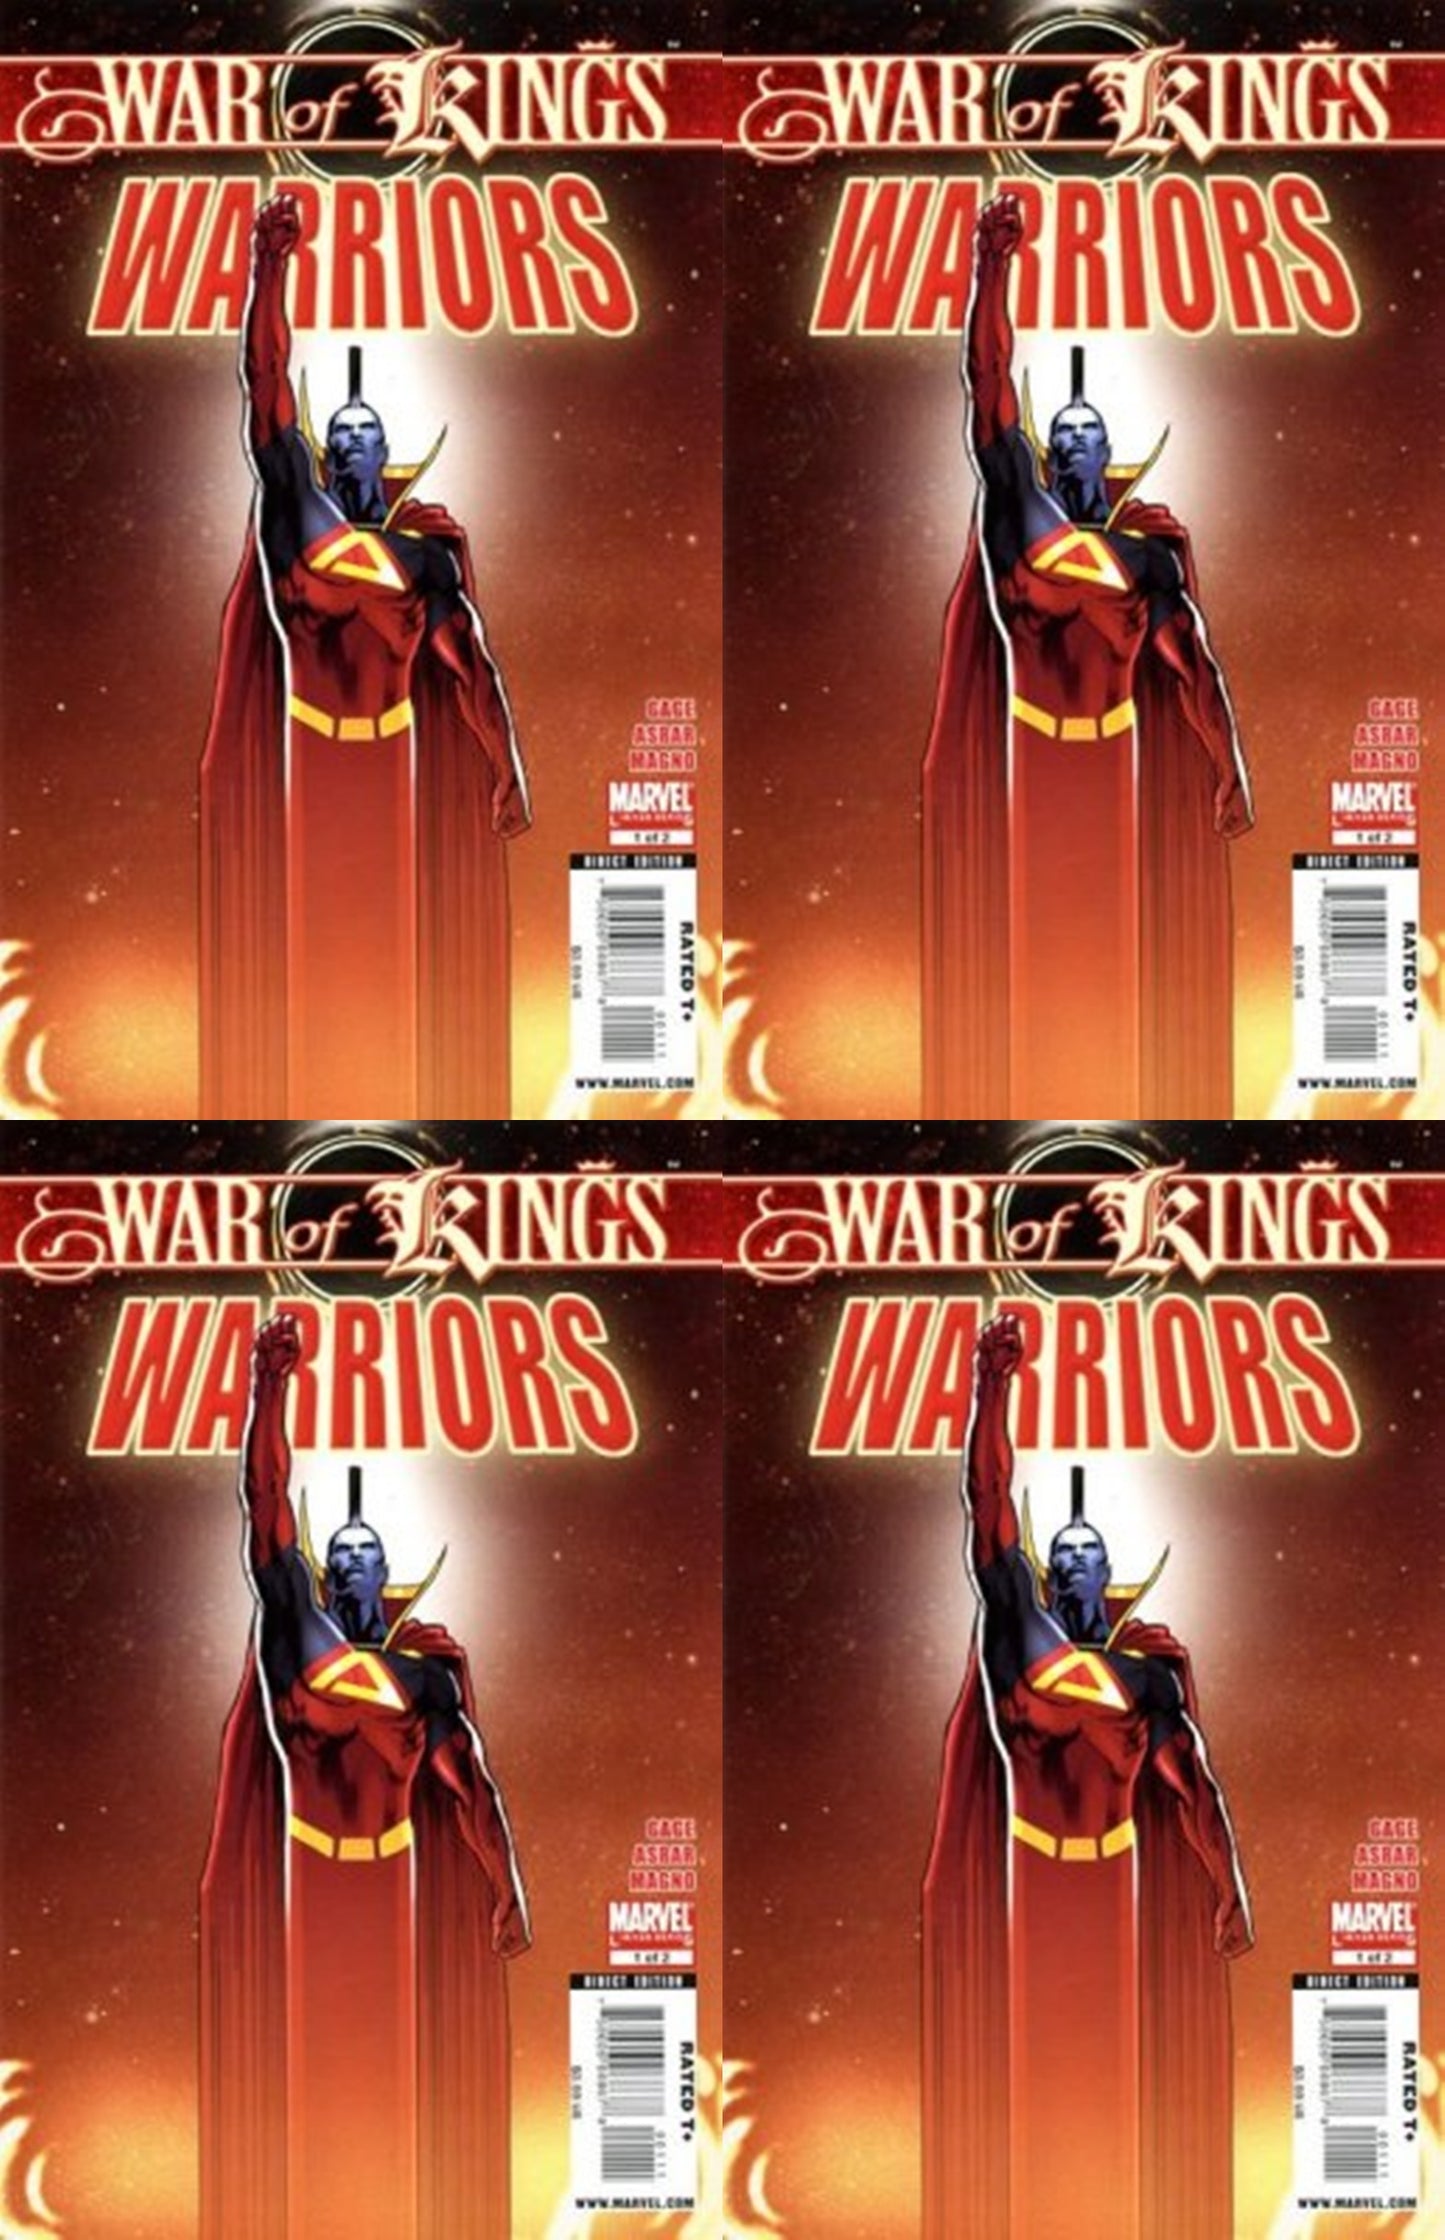 War of Kings: Warriors #1 (2009) Marvel Comics - 4 Comics